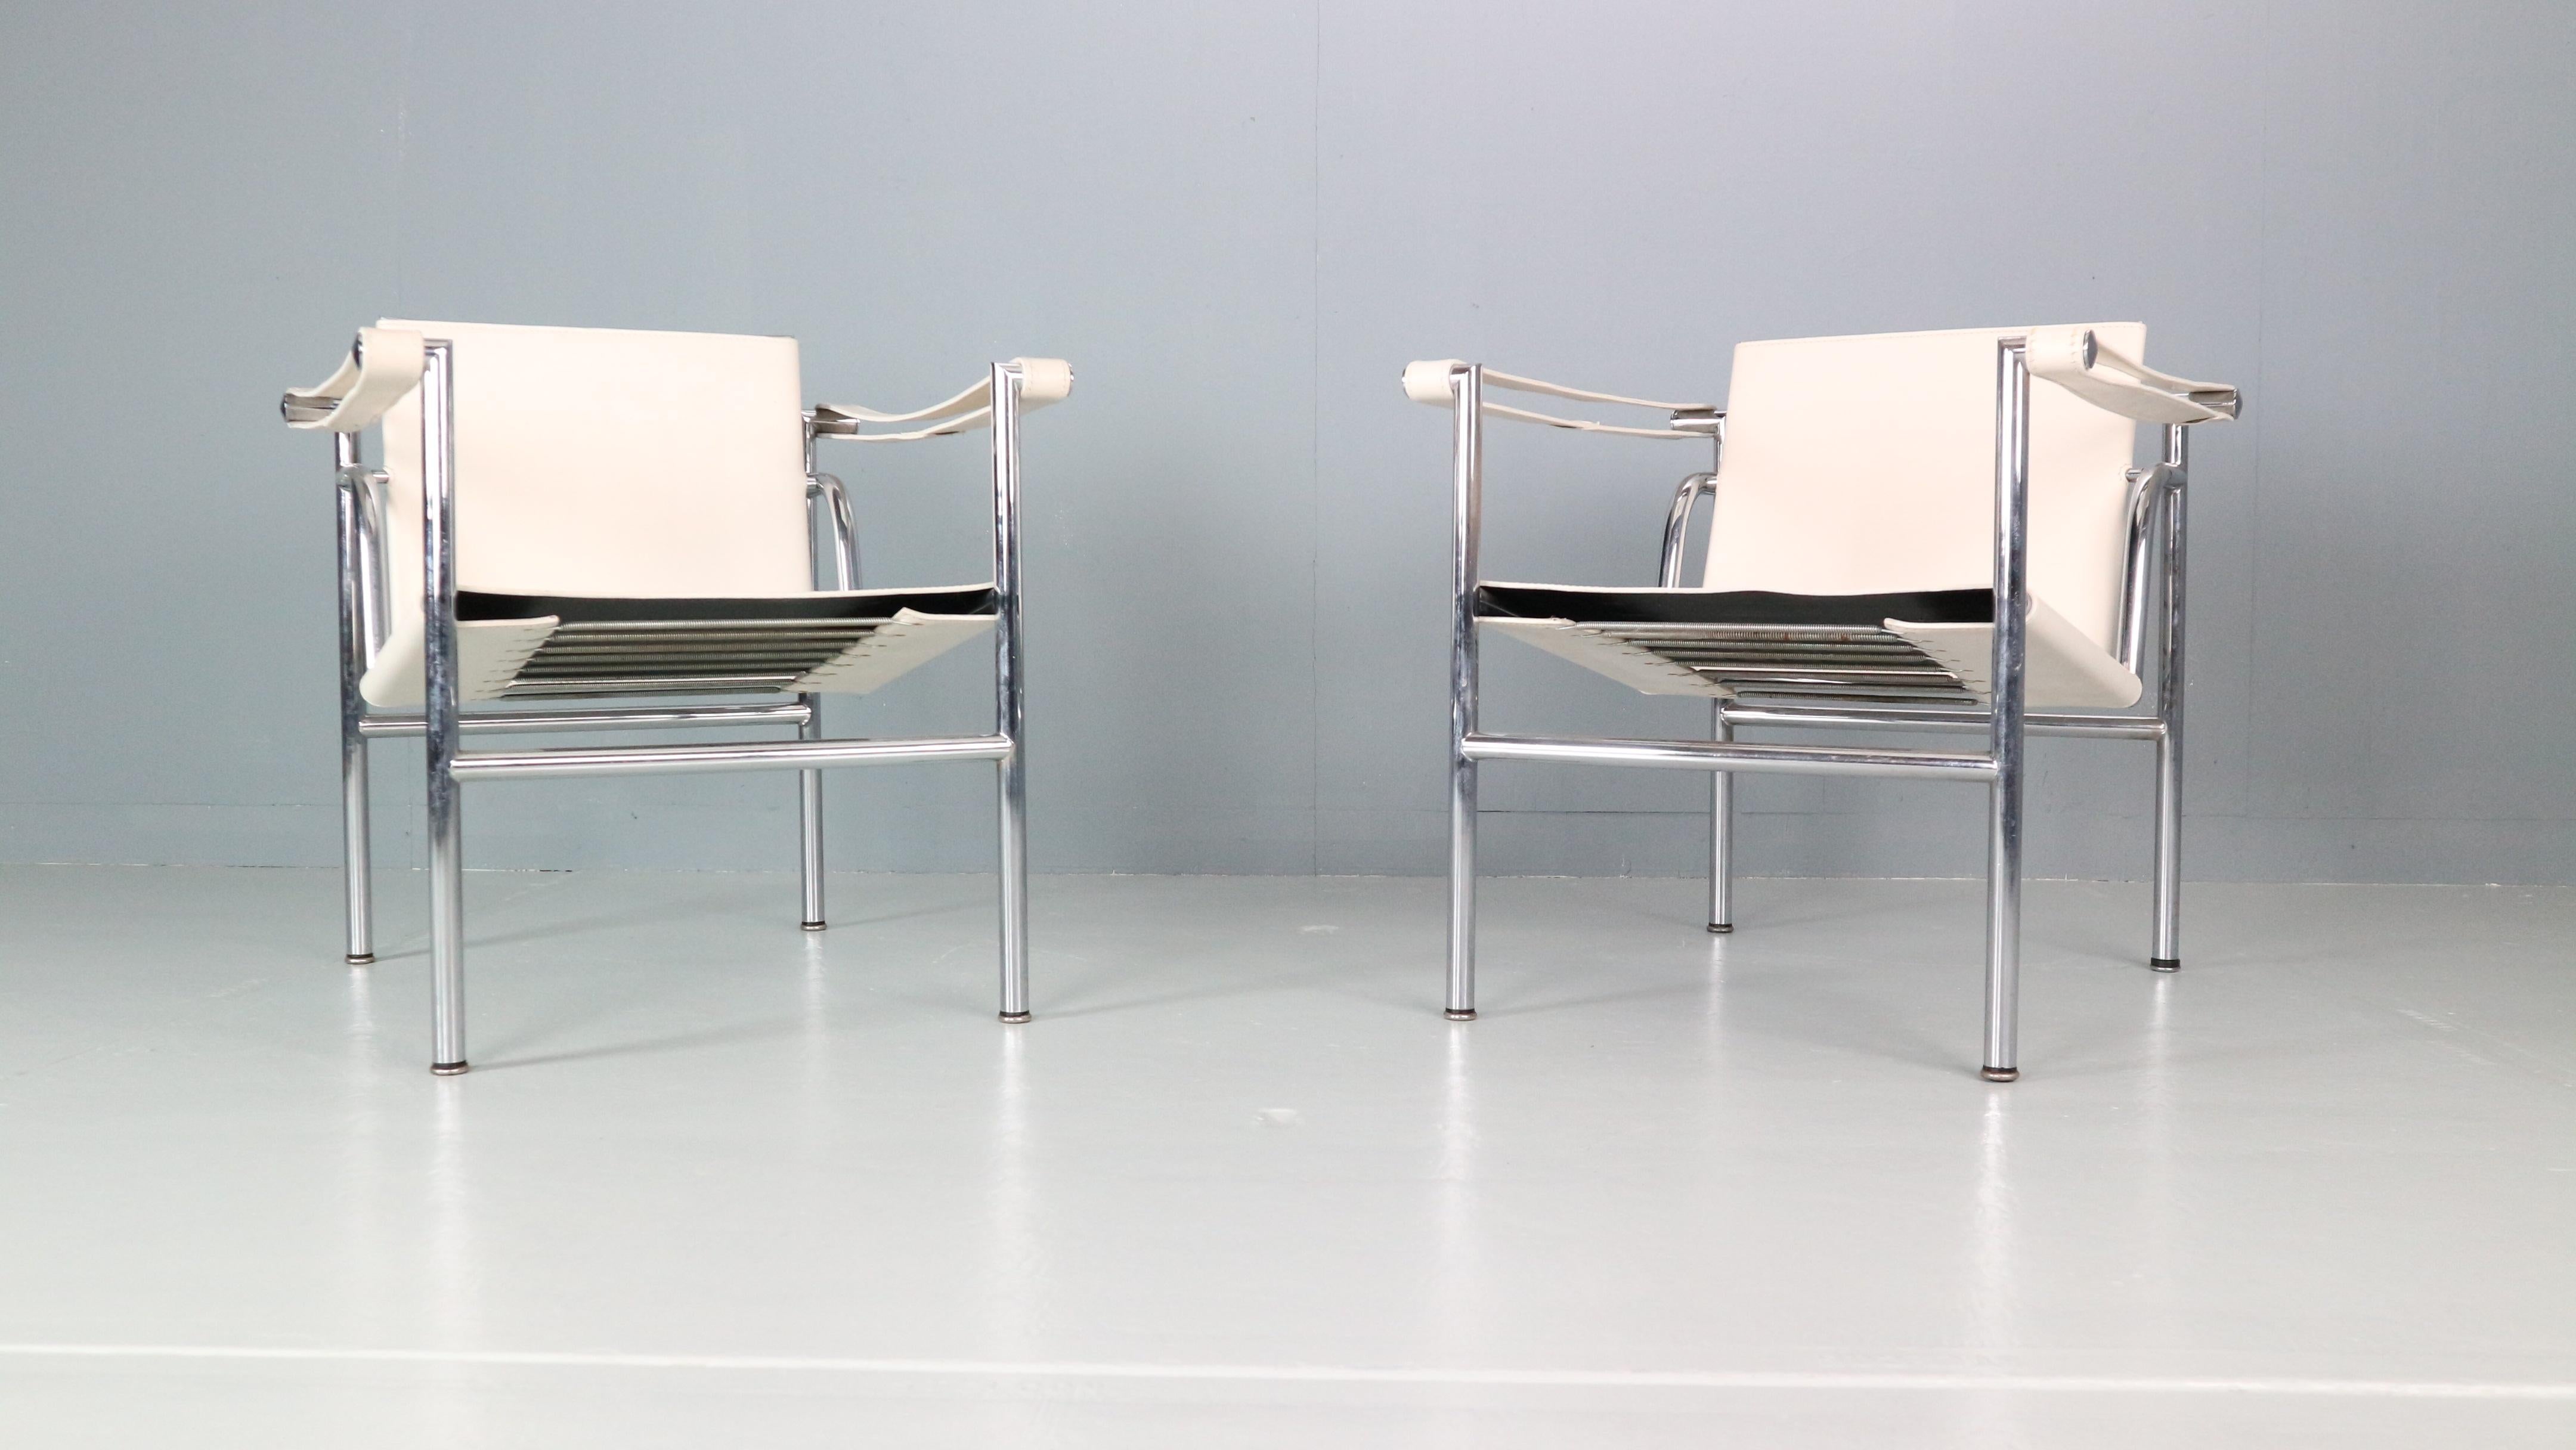 Ensemble de 2 fauteuils dessinés par Le Corbusier et fabriqués pour Cassina, célèbre manufacture italienne de meubles dans les années 1970.
Les deux chaises sont des éditions originales signées et peu nombreuses. 
Numéro de modèle : LC1.
Structure